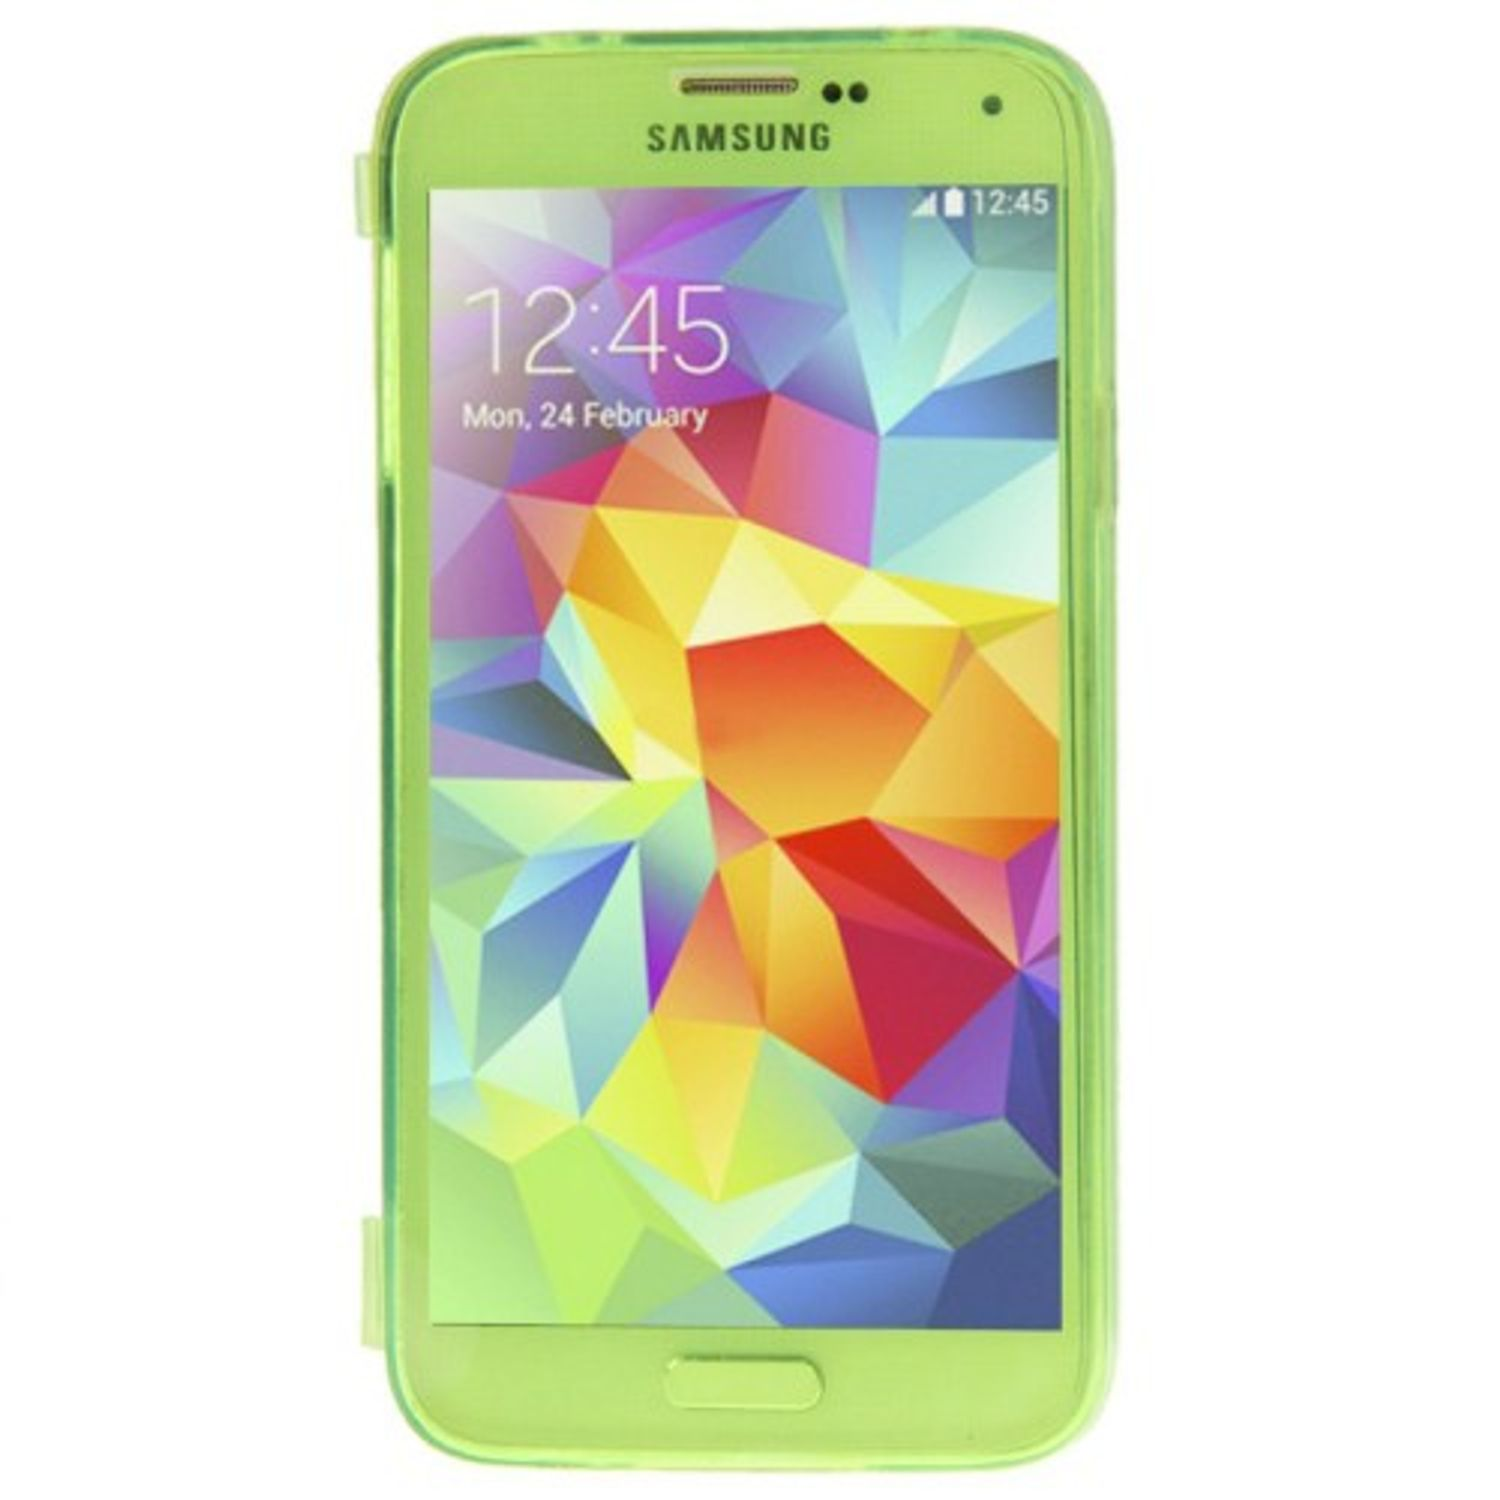 Samsung, KÖNIG S5 Neo, DESIGN S5 / Schutzhülle, Rosa Galaxy Backcover,